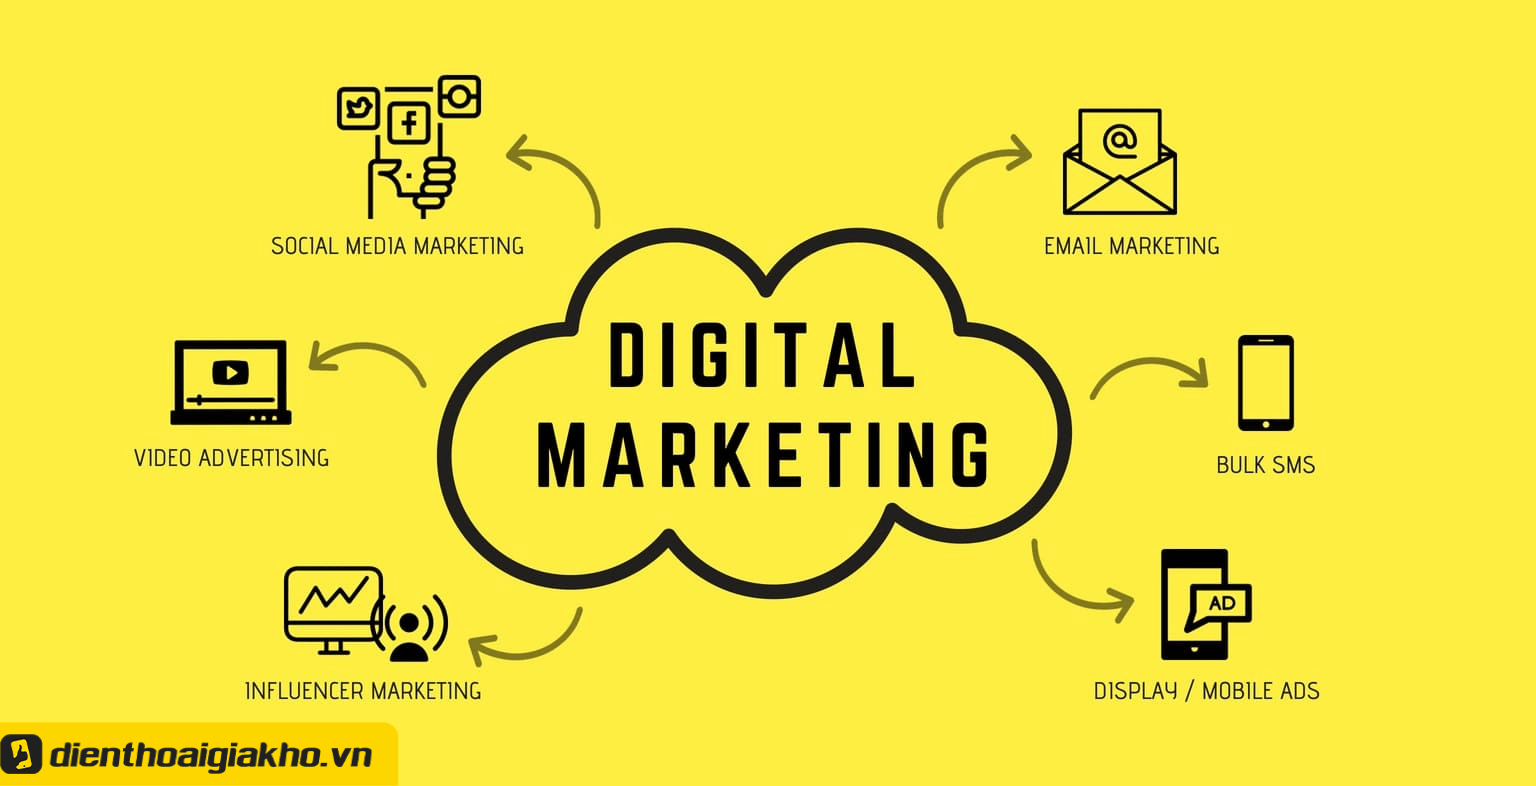 Tìm hiểu các khóa học digital marketing hữu ích 